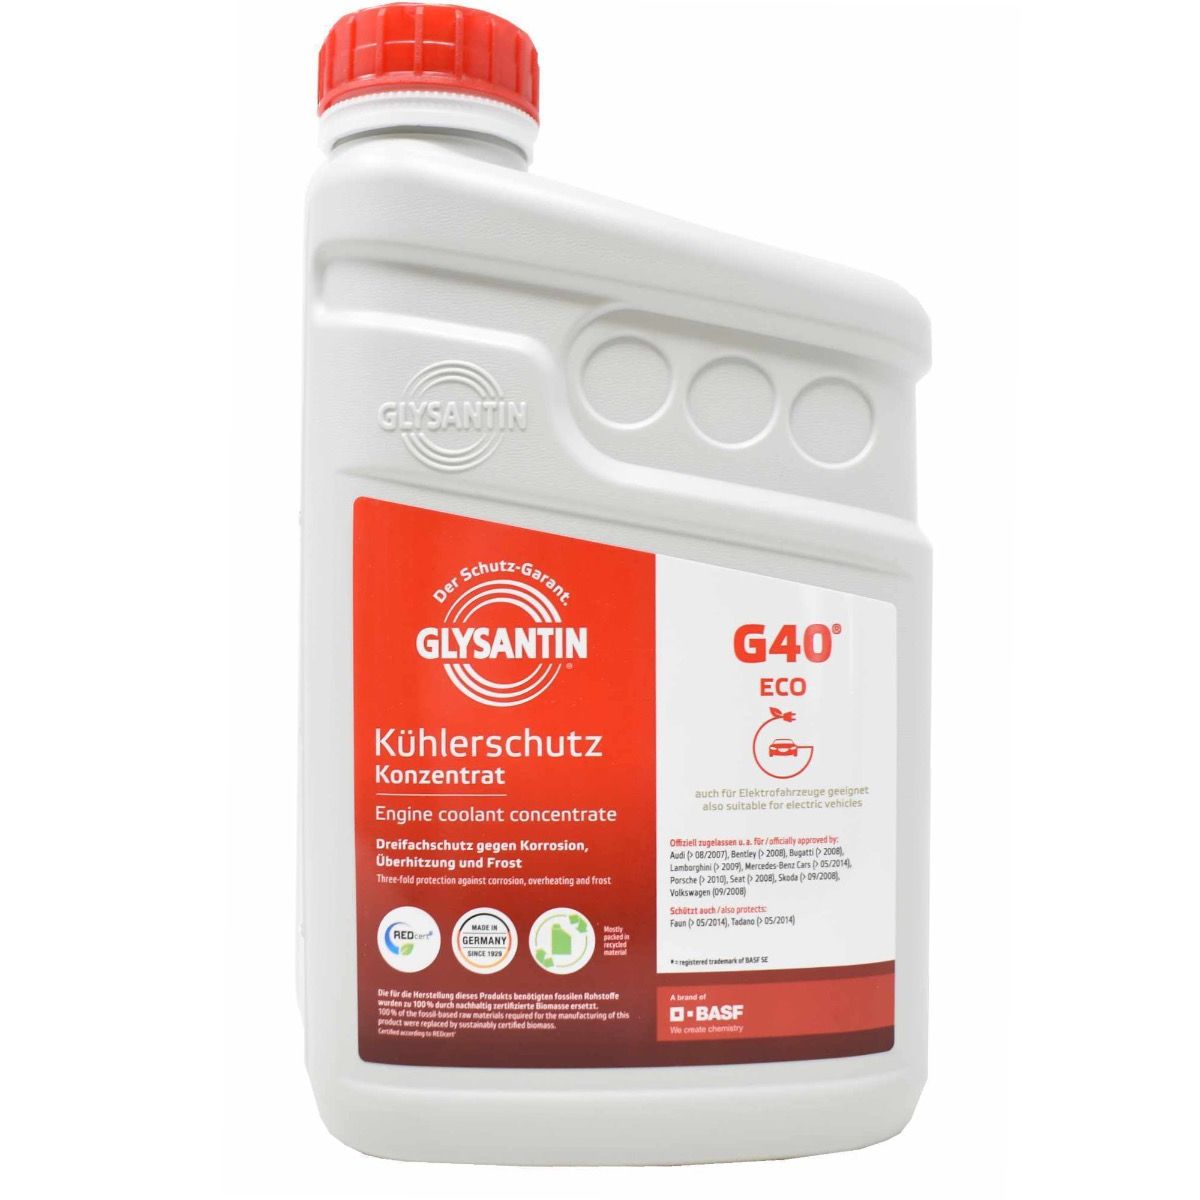 Glysantin G40 Kühlerfrostschutz bei ATO24 ❗